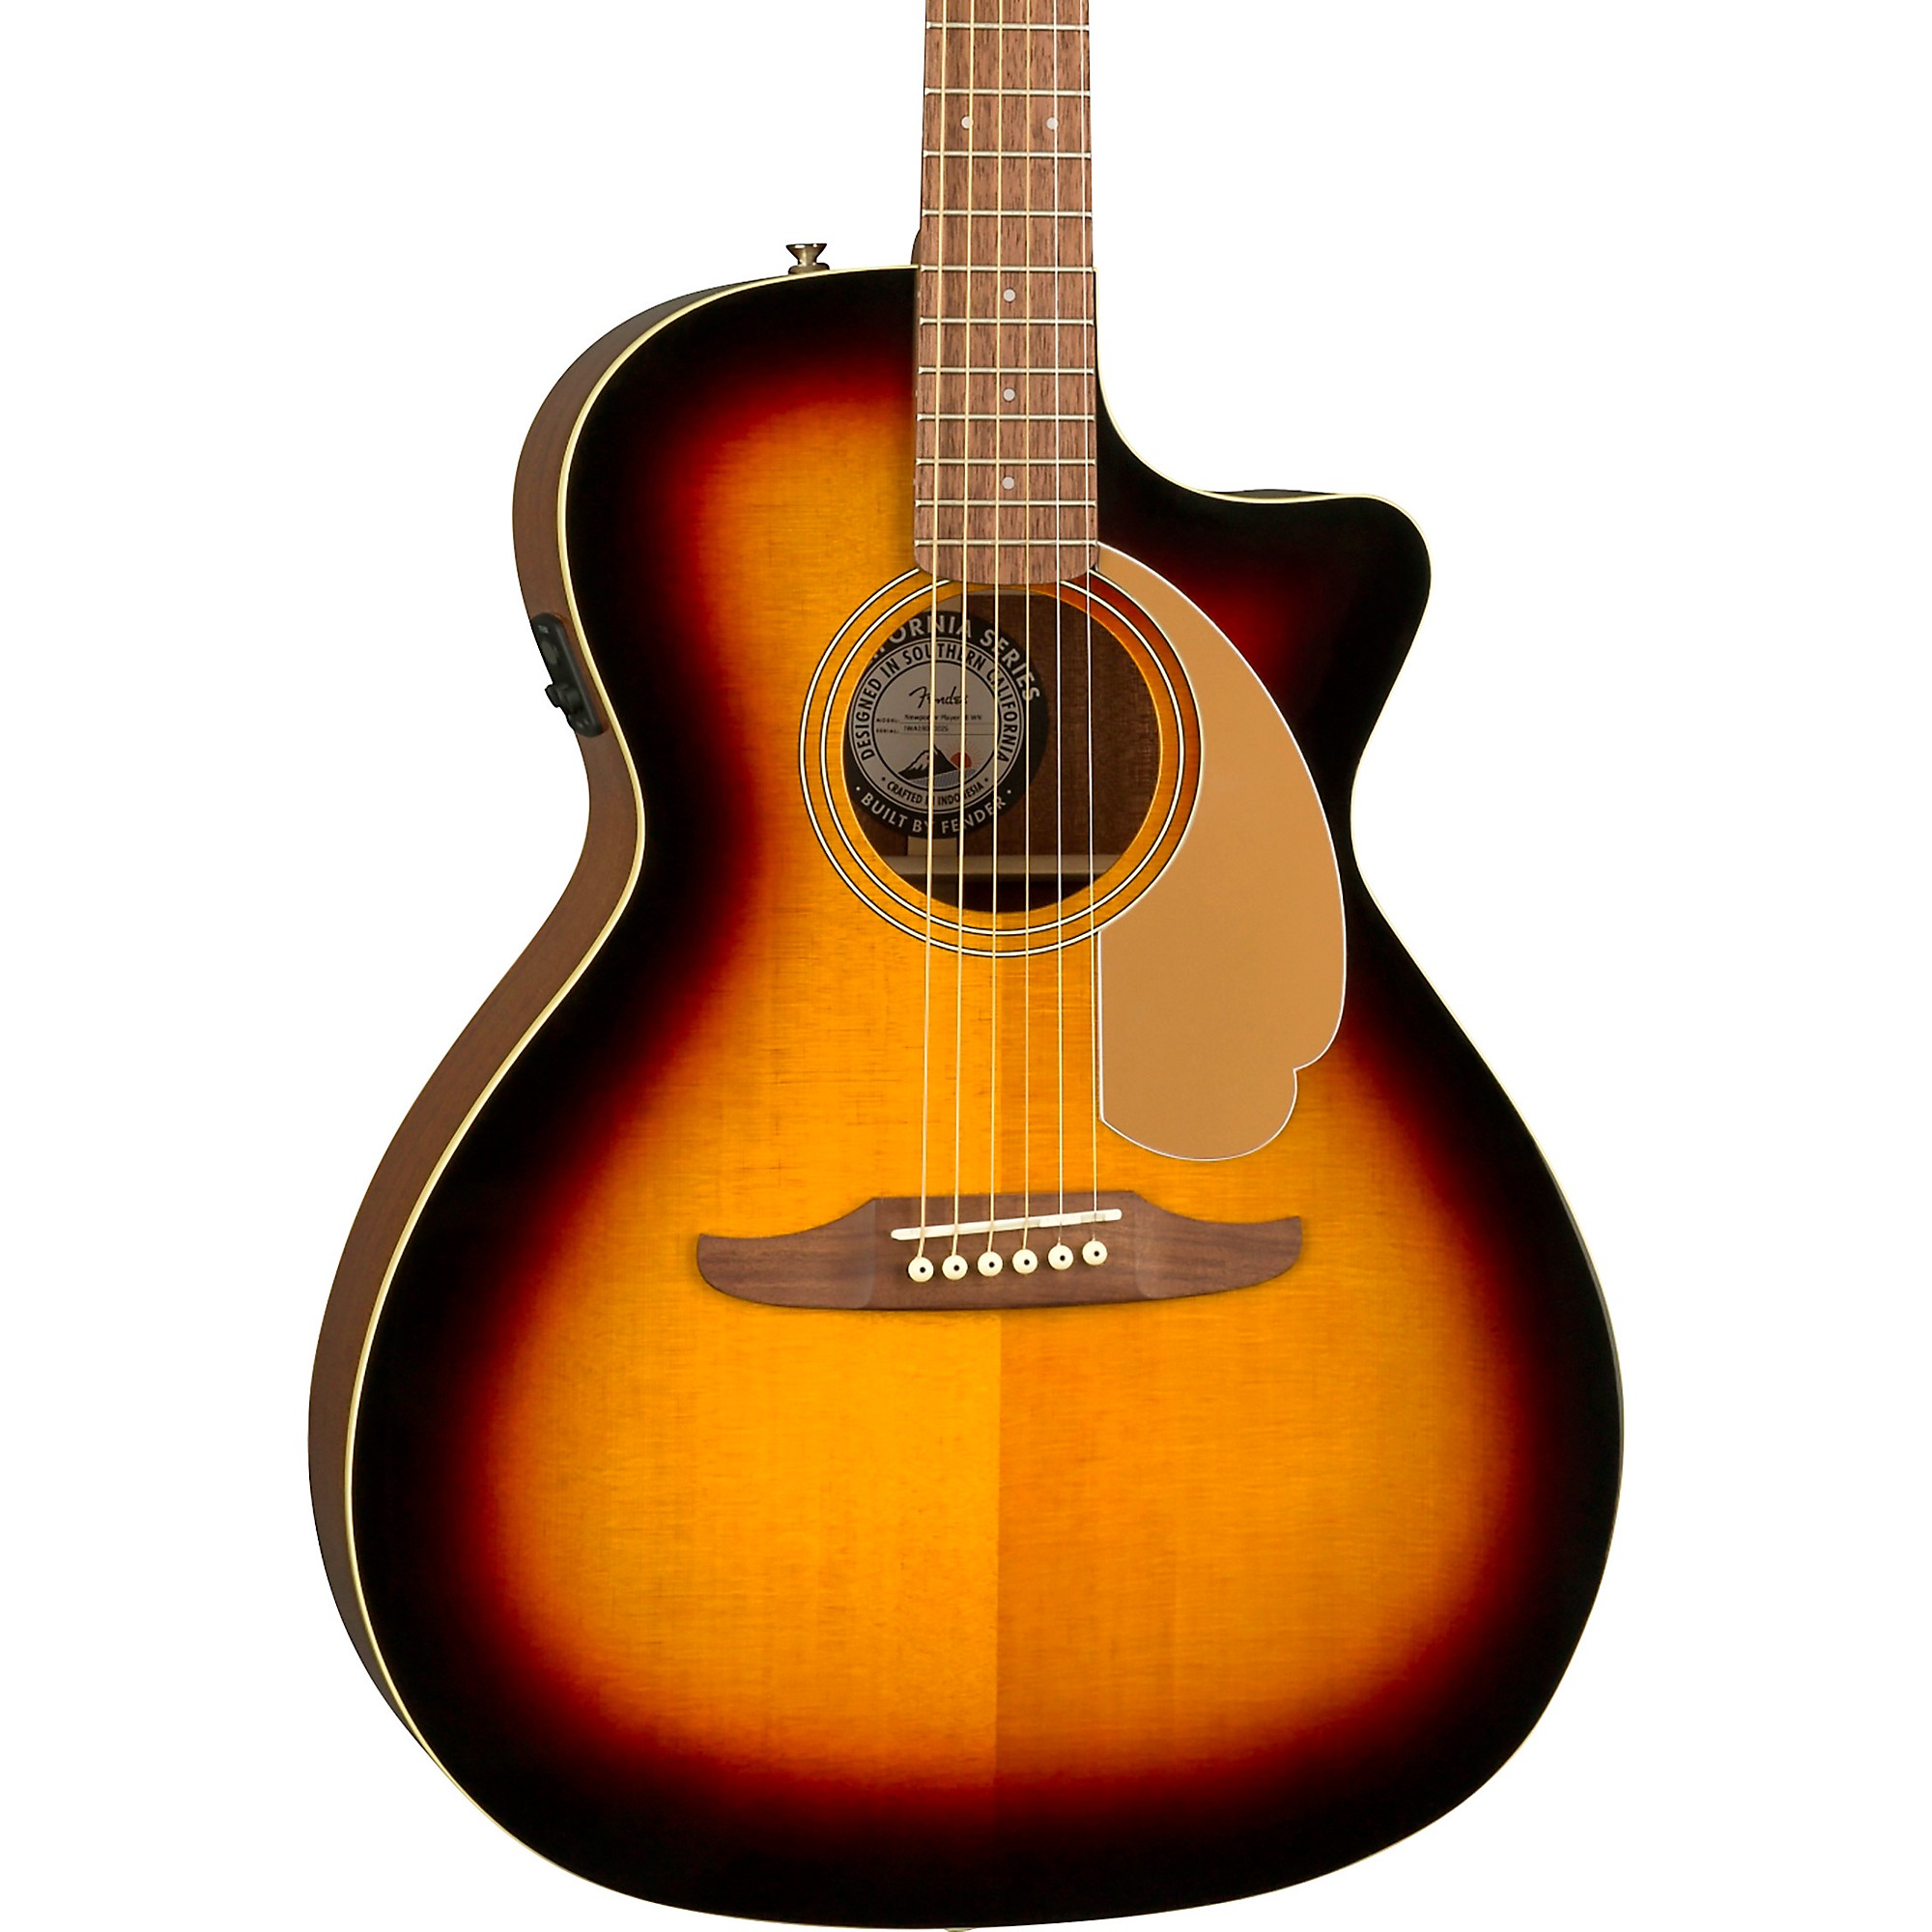 Акустически-электрическая гитара Fender California Newporter Player Sunburst электроакустическая гитара fender newporter player all mahogany